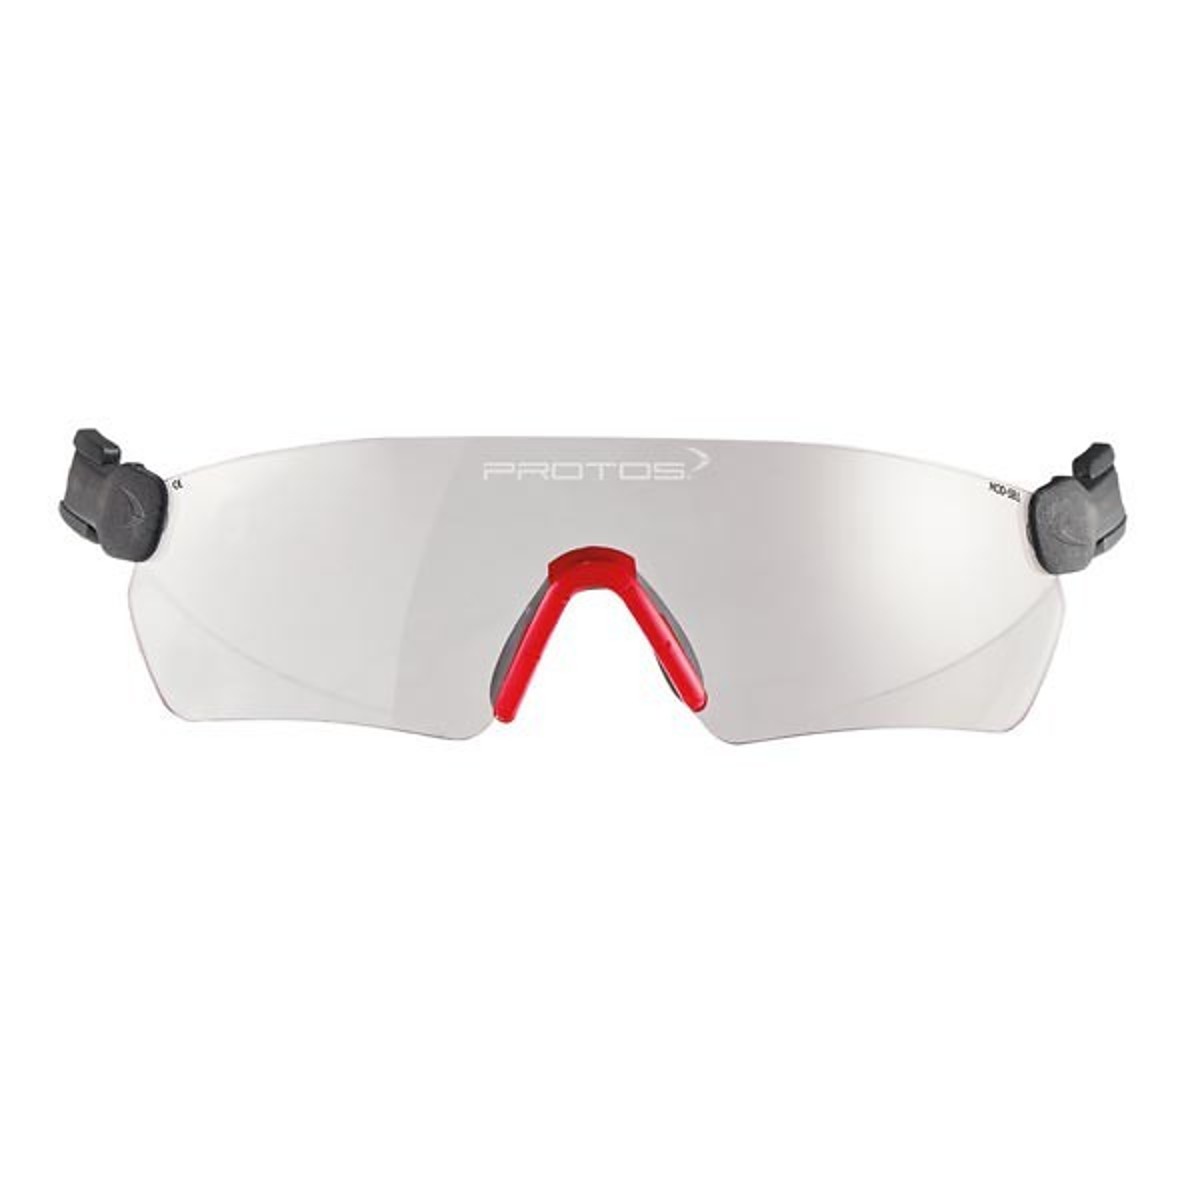 Protos integral goggles